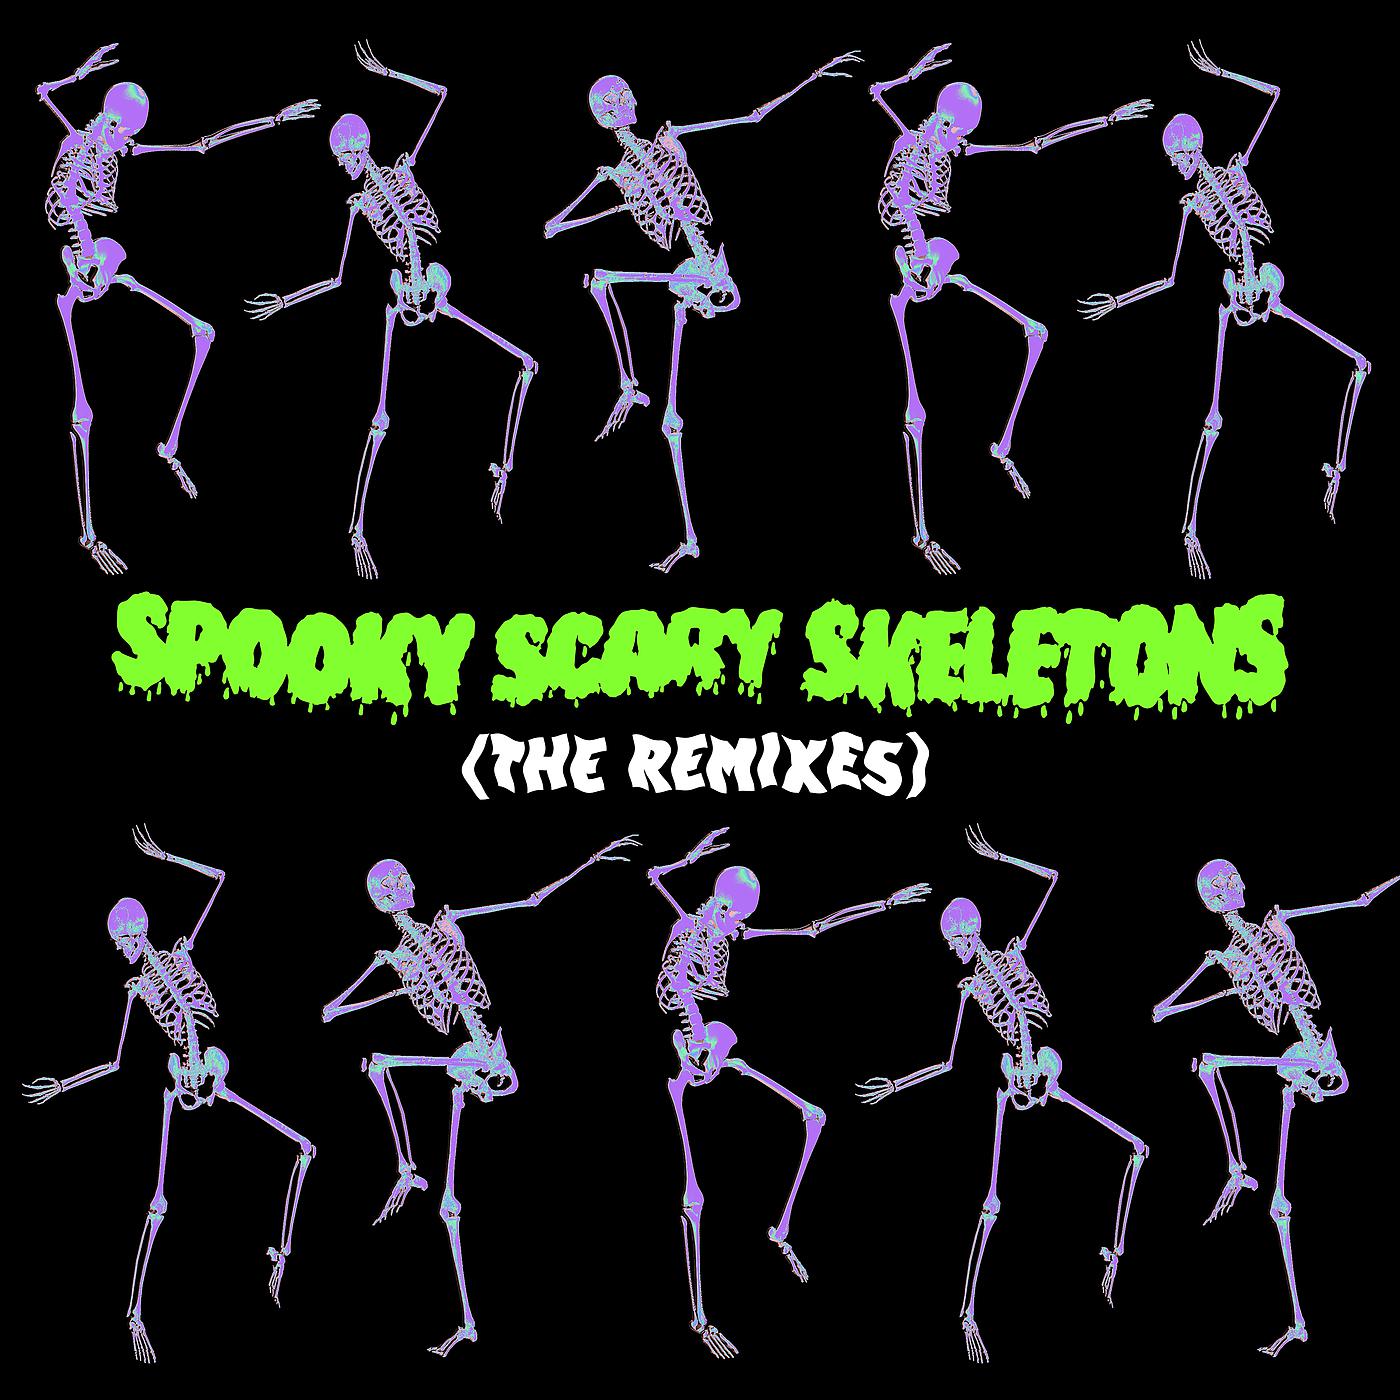 Спуки скери скелетонс. Spooky Scary Skeletons Эндрю Голд. Песня Spooky Scary Skeletons. Spooky, Scary Skeletons (Undead Tombstone Remix Extended) (Undead Tombstone Remix Extended).